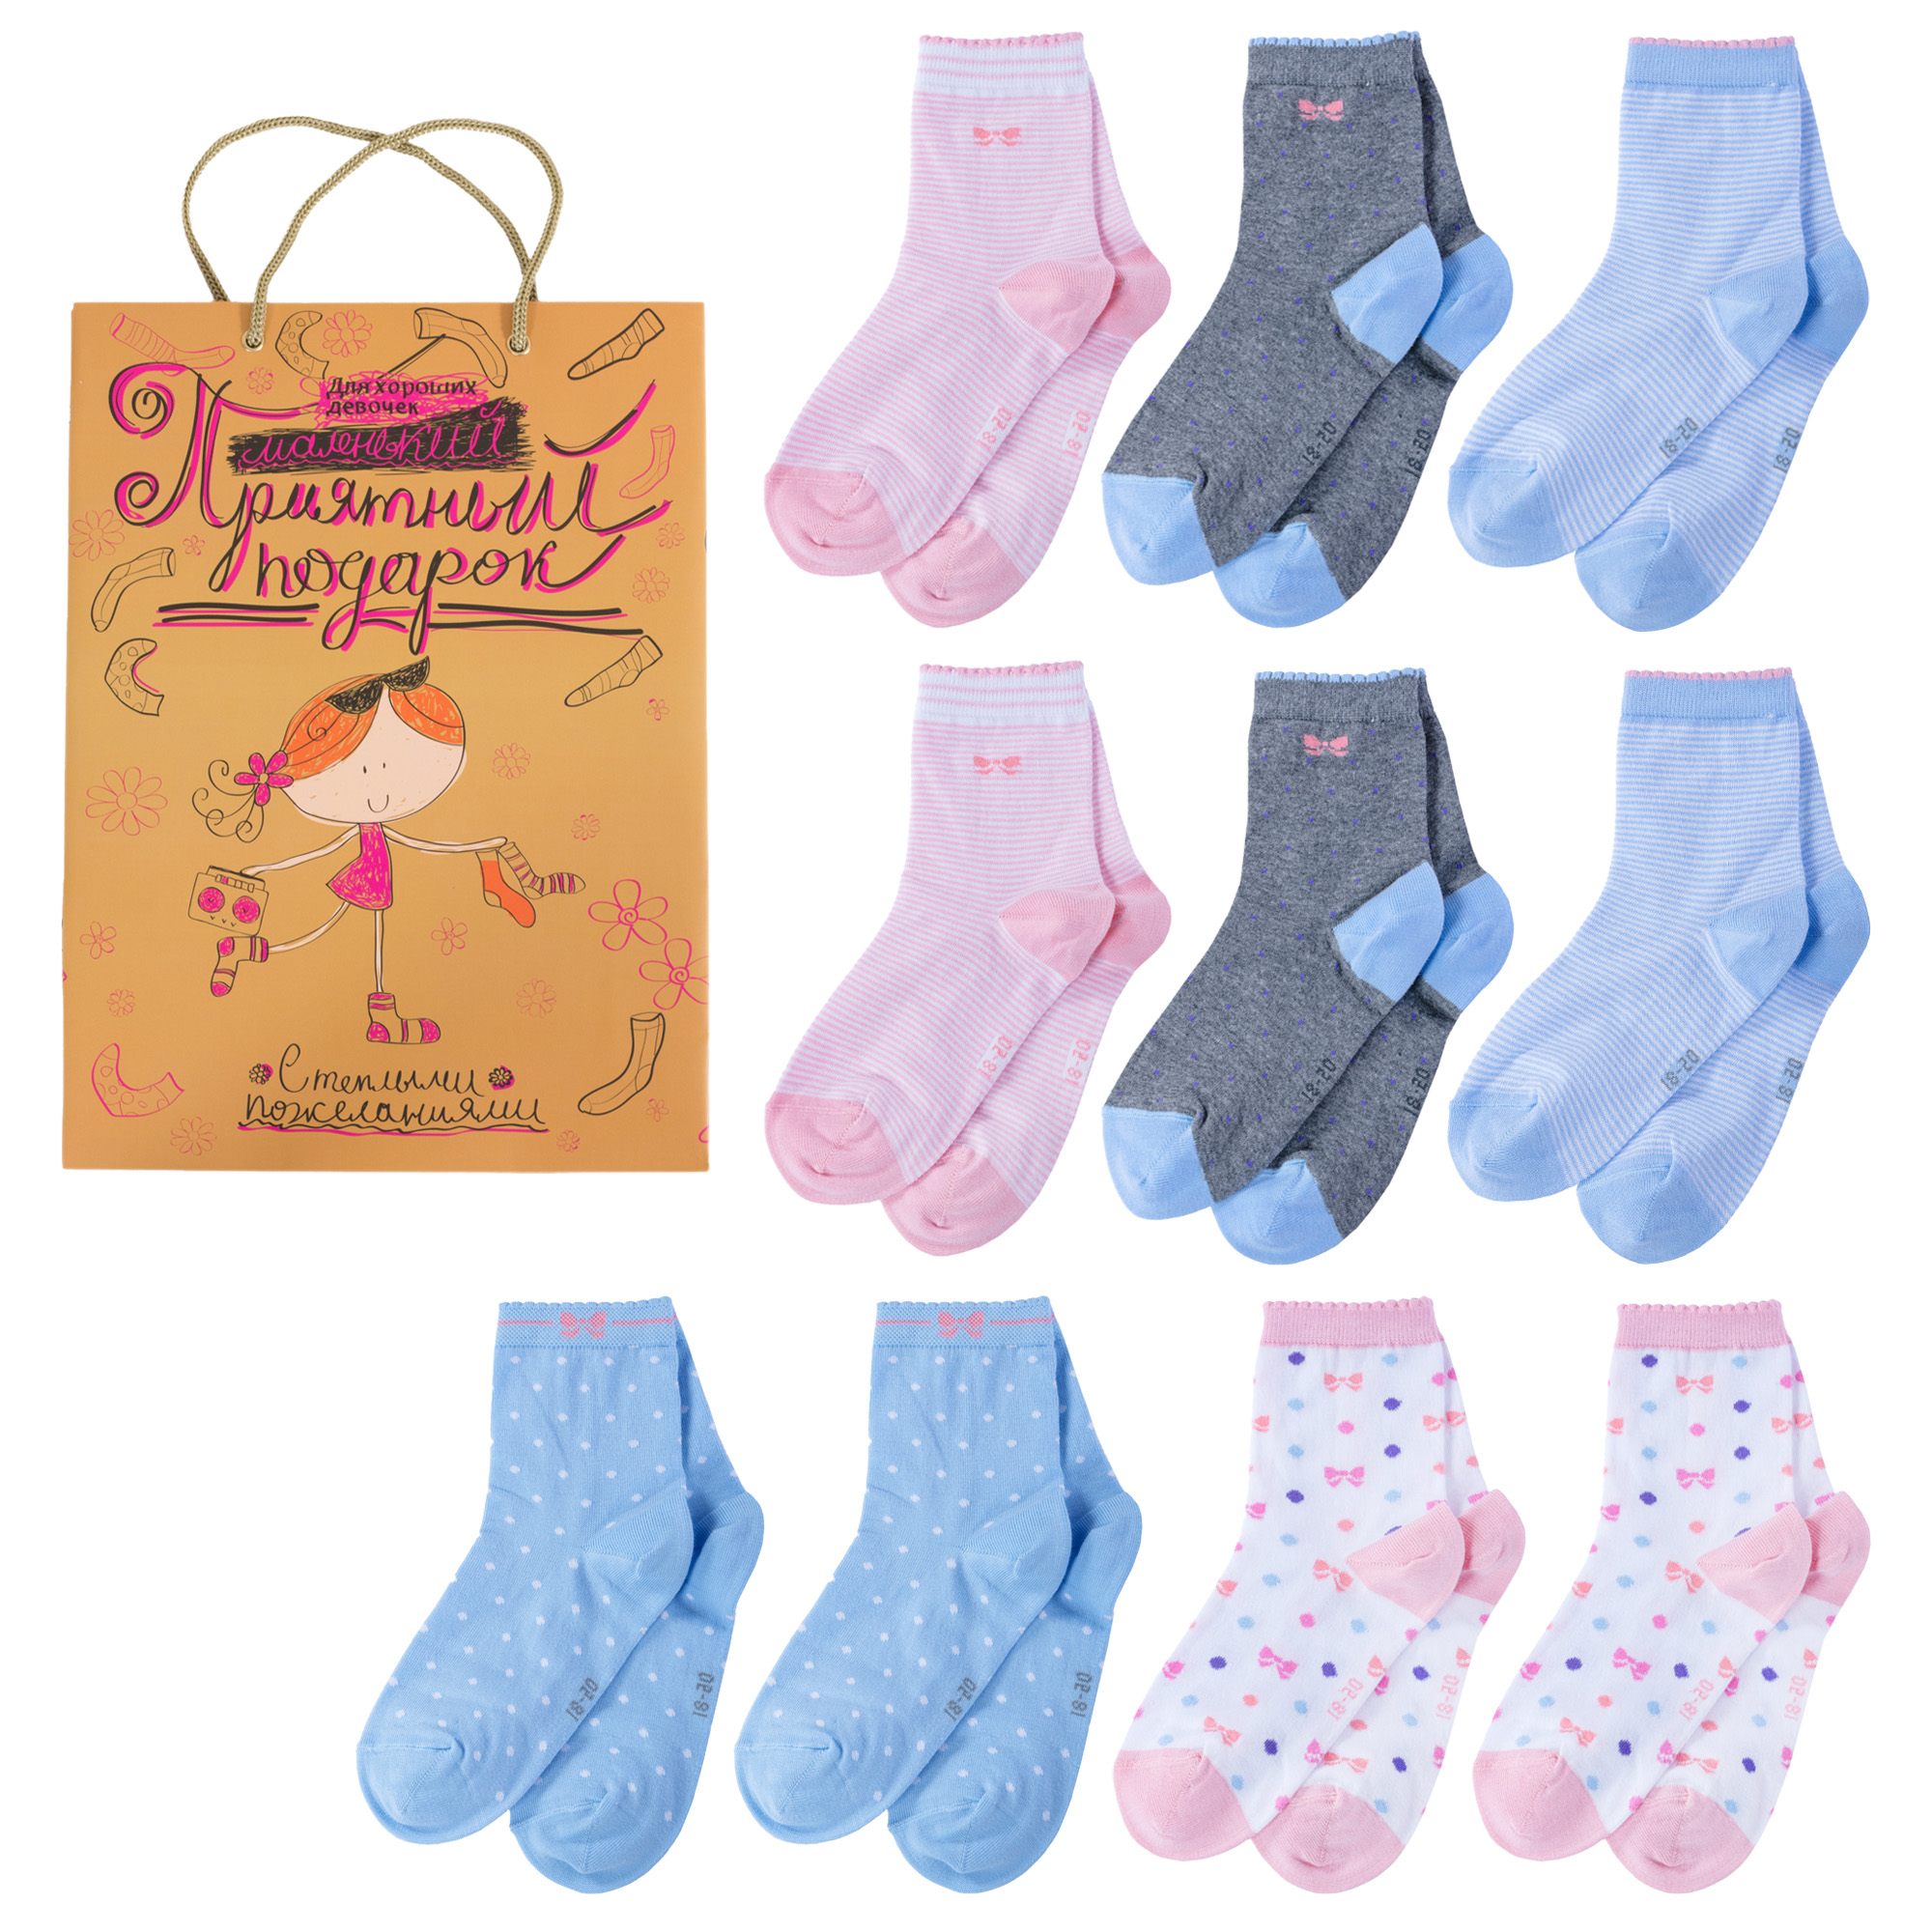 Носки для девочек LorenzLine Л105-10 цв. голубой; розовый; серый; белый р. 44779 носки для девочек lorenzline л105 10 цв голубой розовый серый белый р 44905